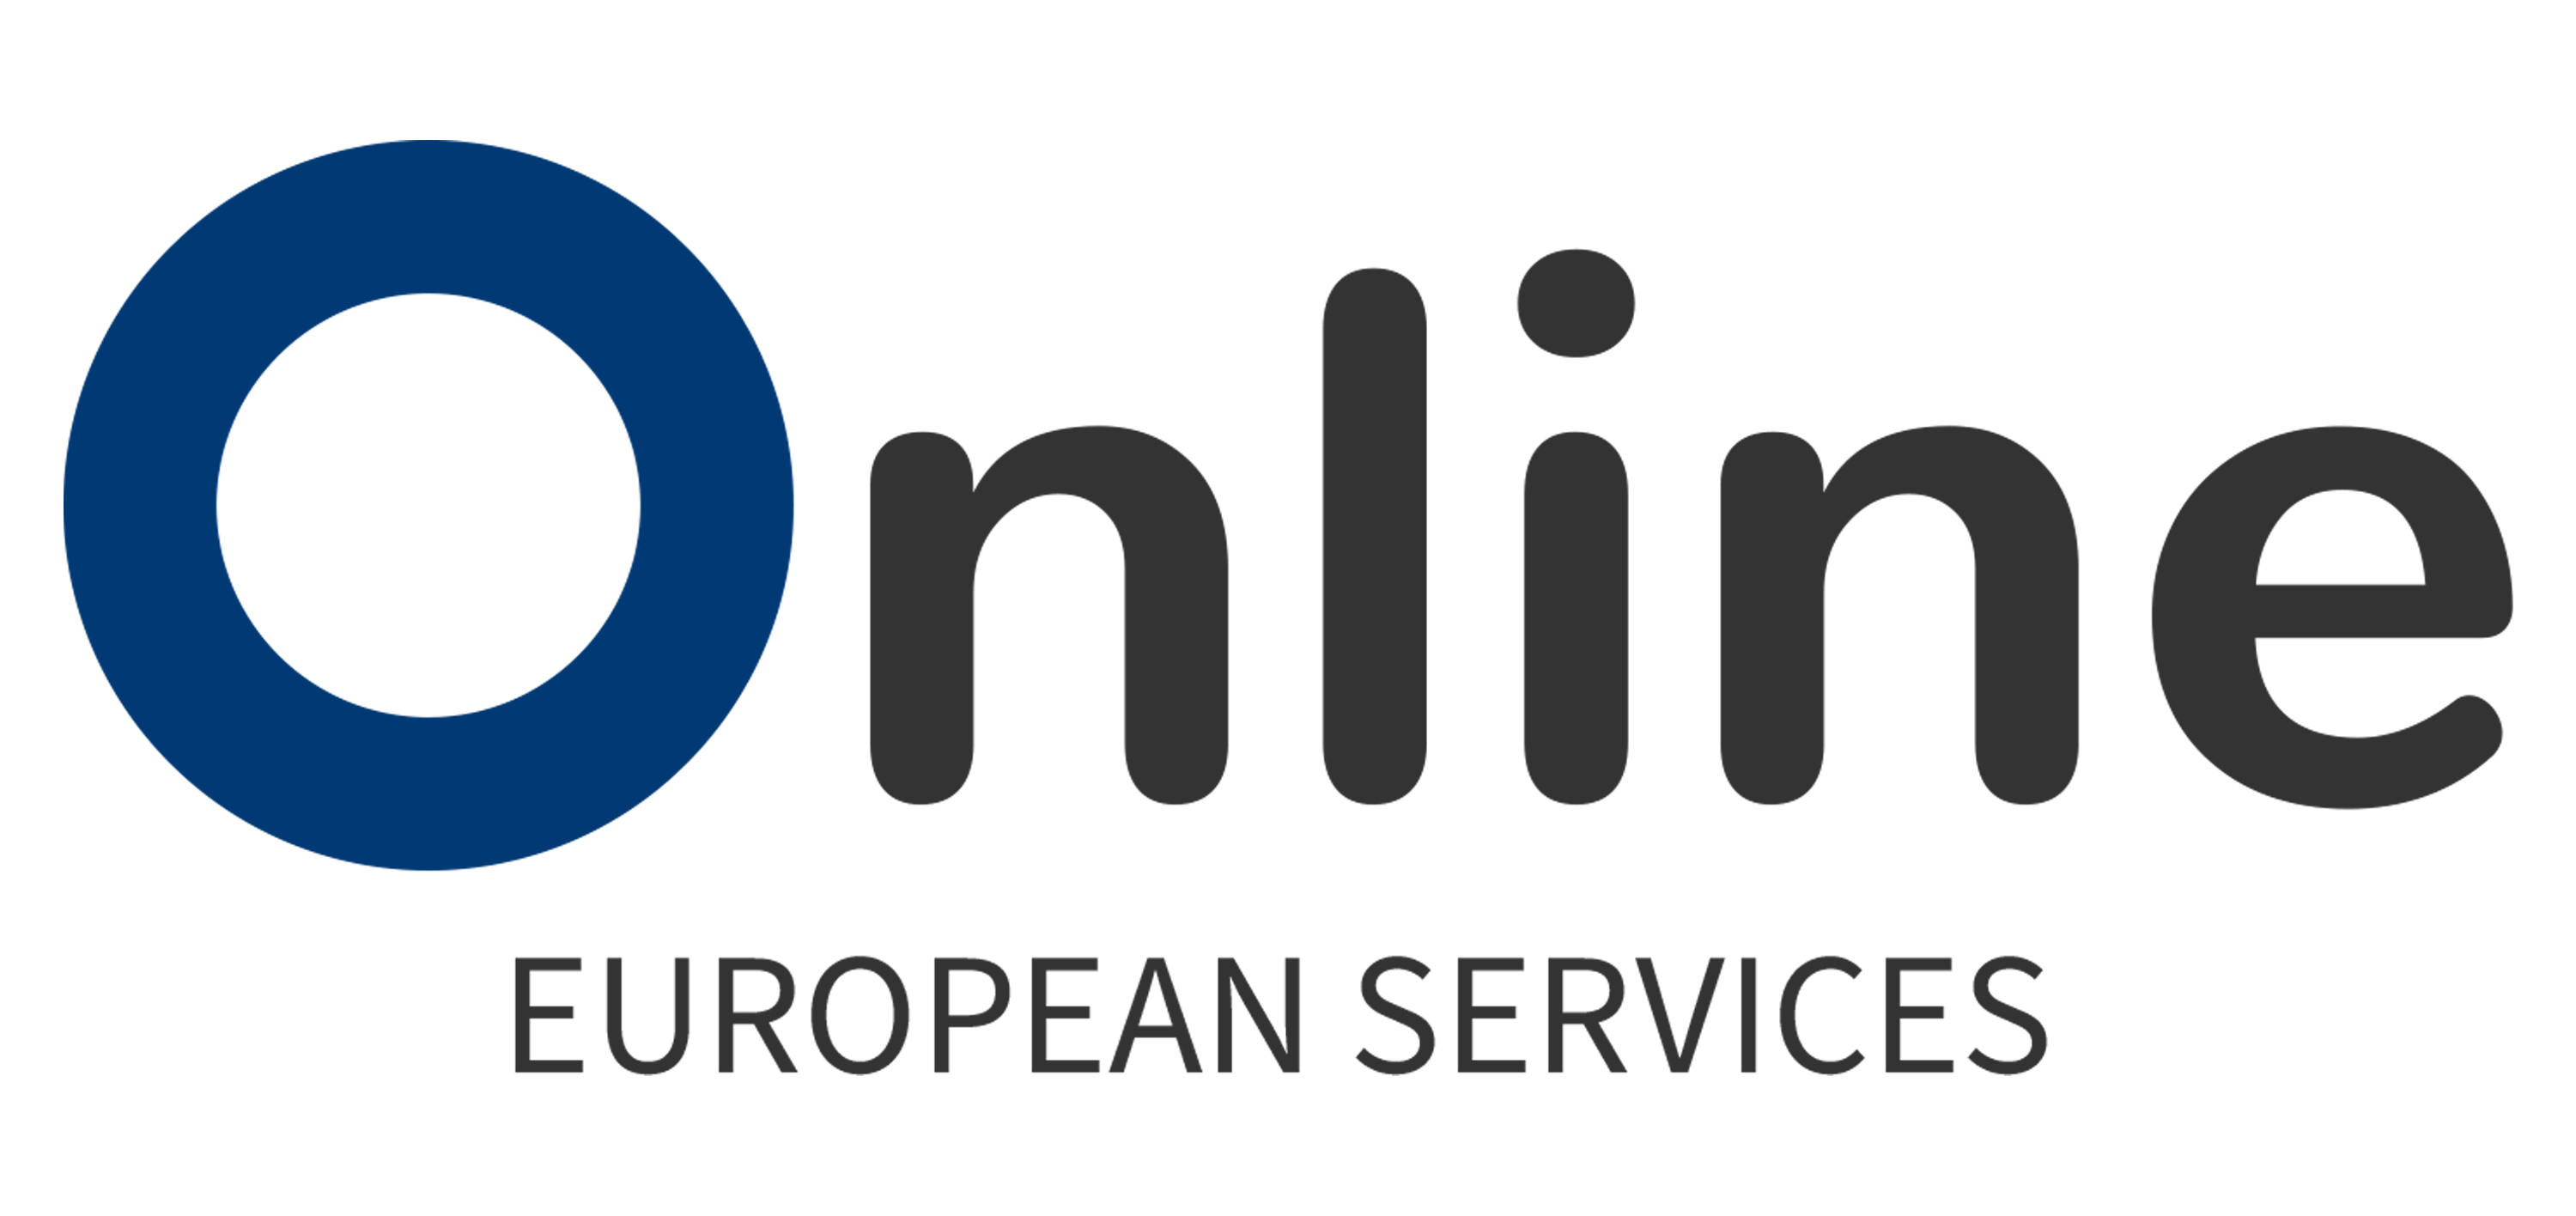 Online European Services